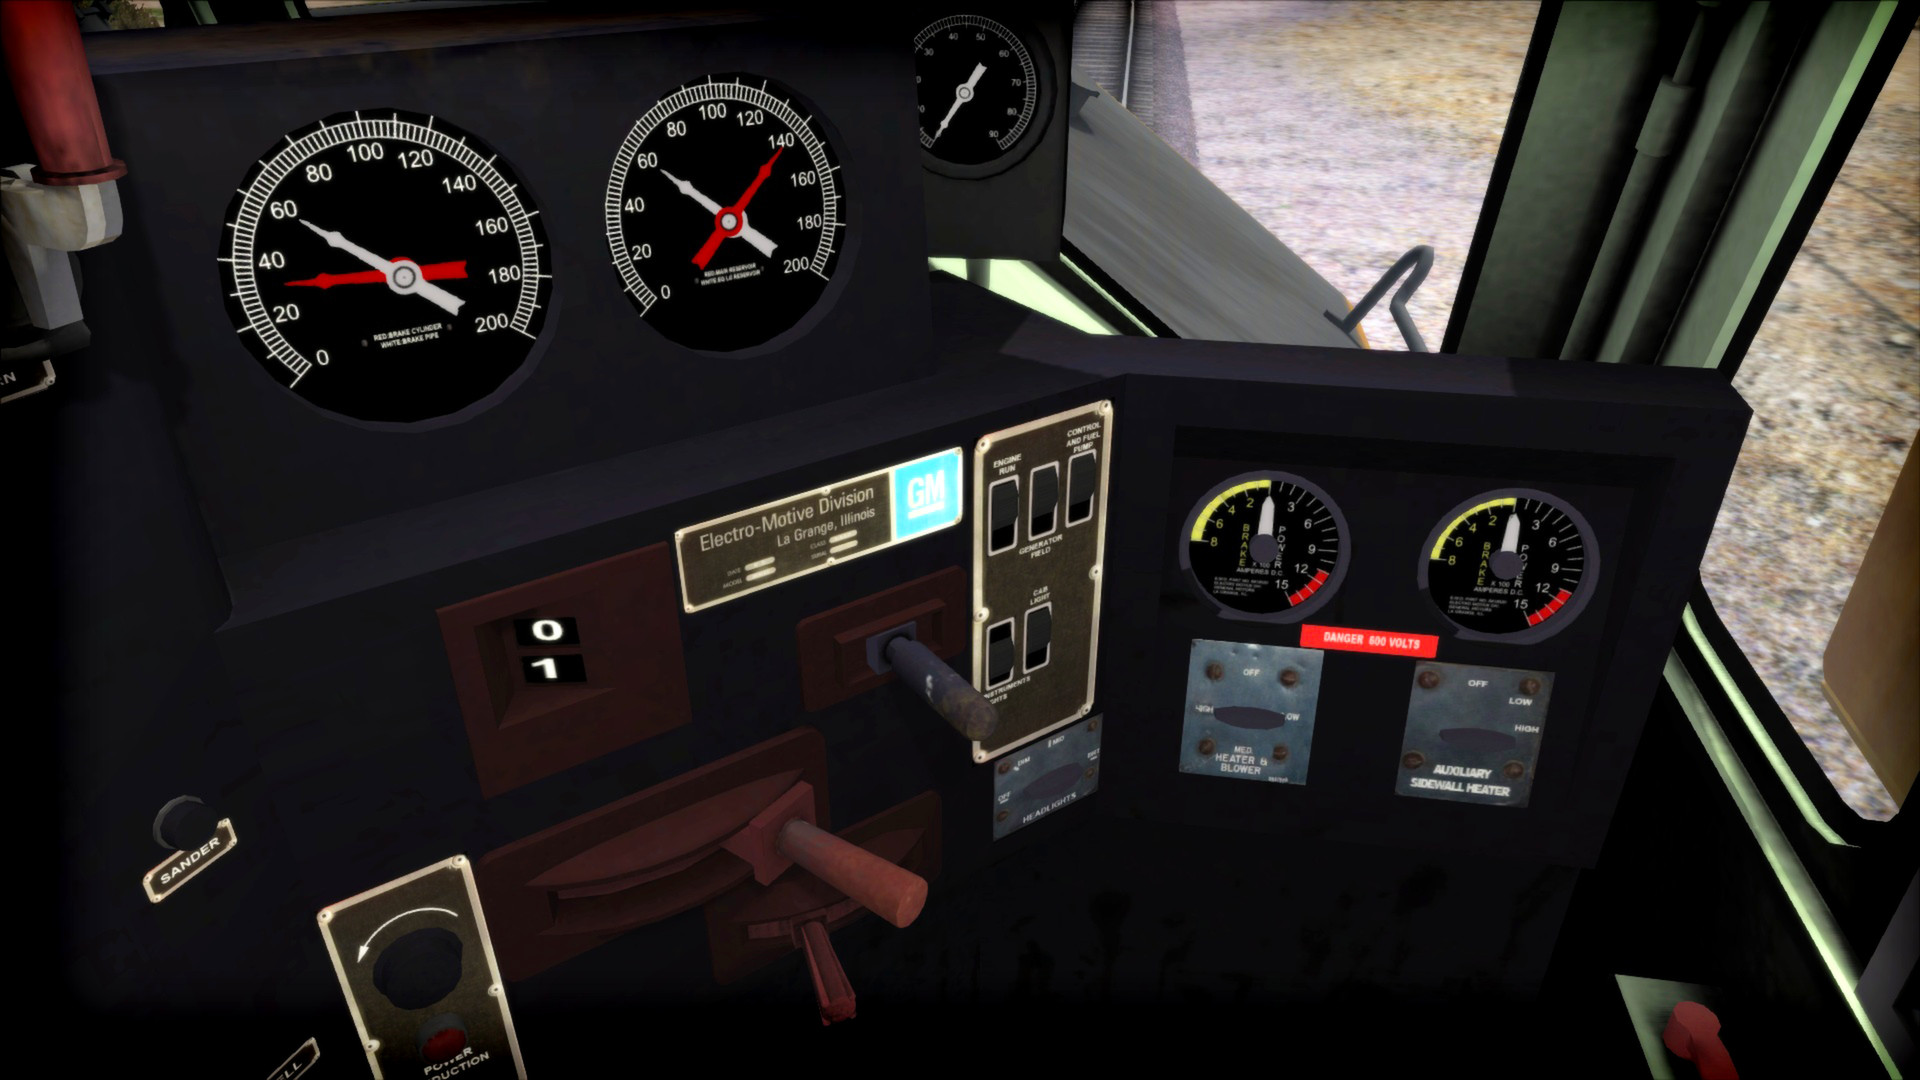 Train Simulator: Union Pacific DDA40X Centennial Loco Add-On screenshot